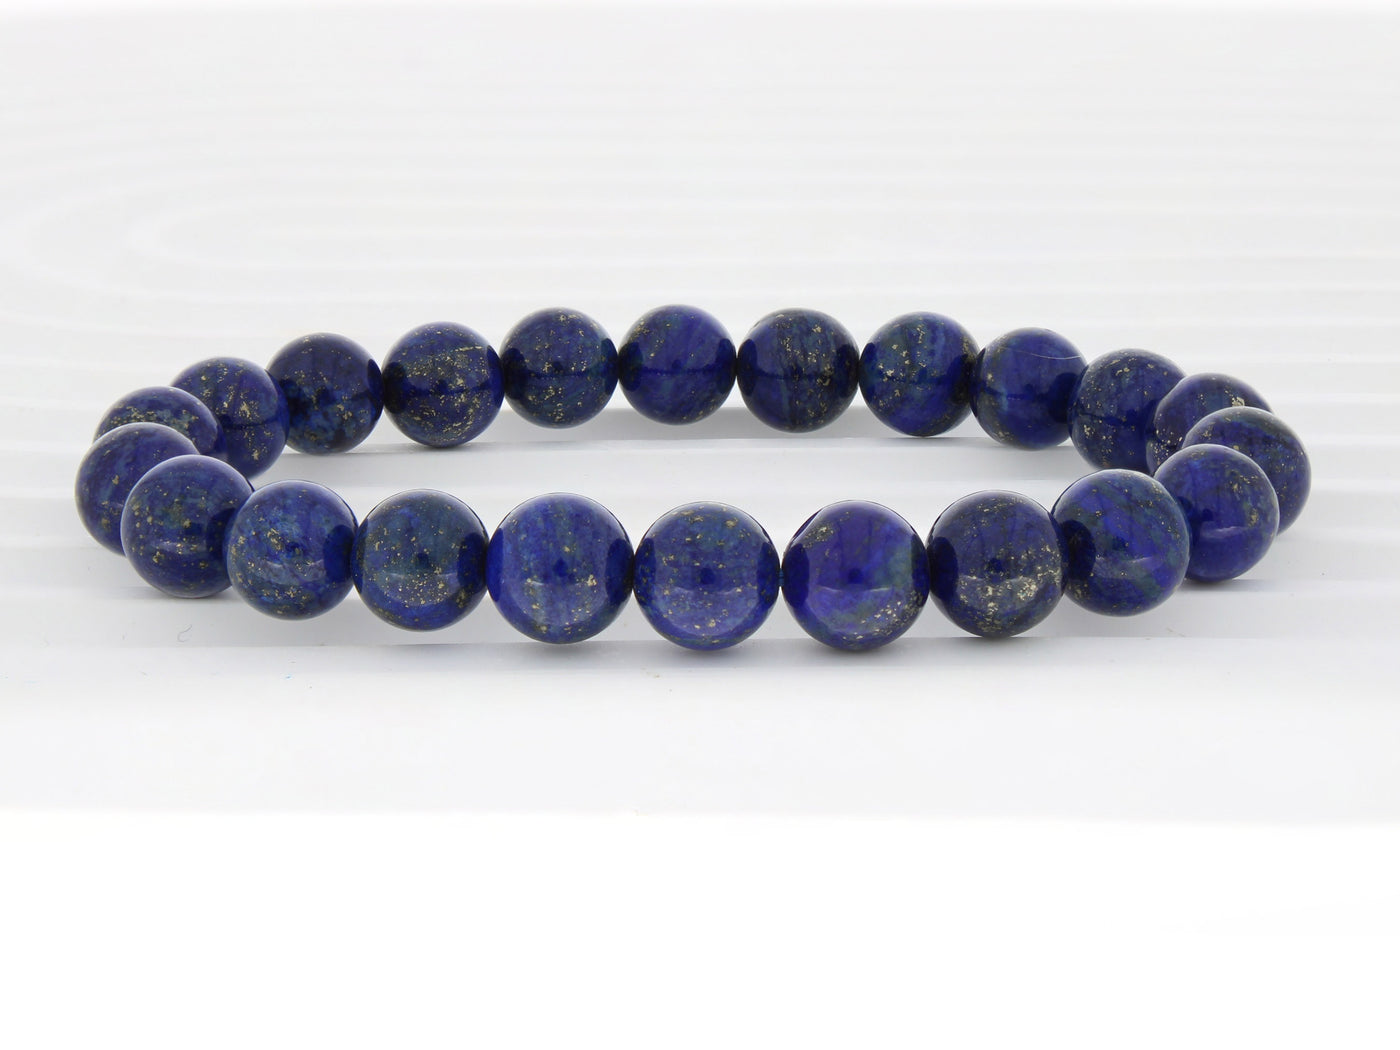 Cerulean - Lapis Lazuli